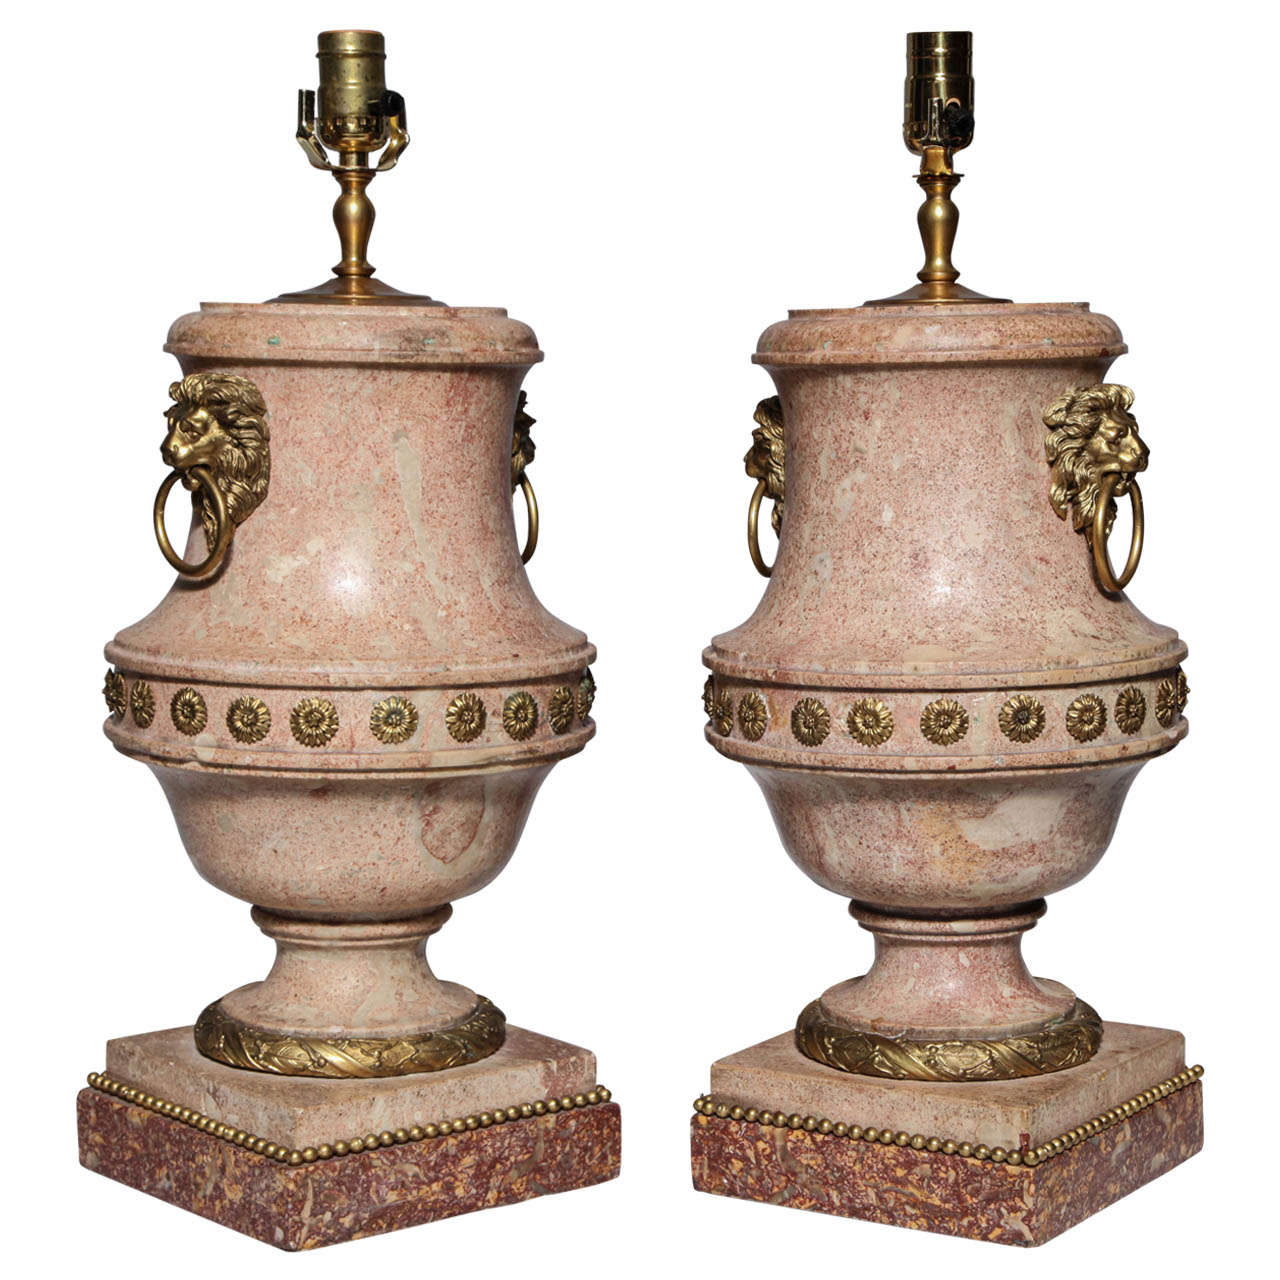 Paire d'urnes Scagliola italiennes de qualité supérieure avec montures en bronze doré comme lampes en vente